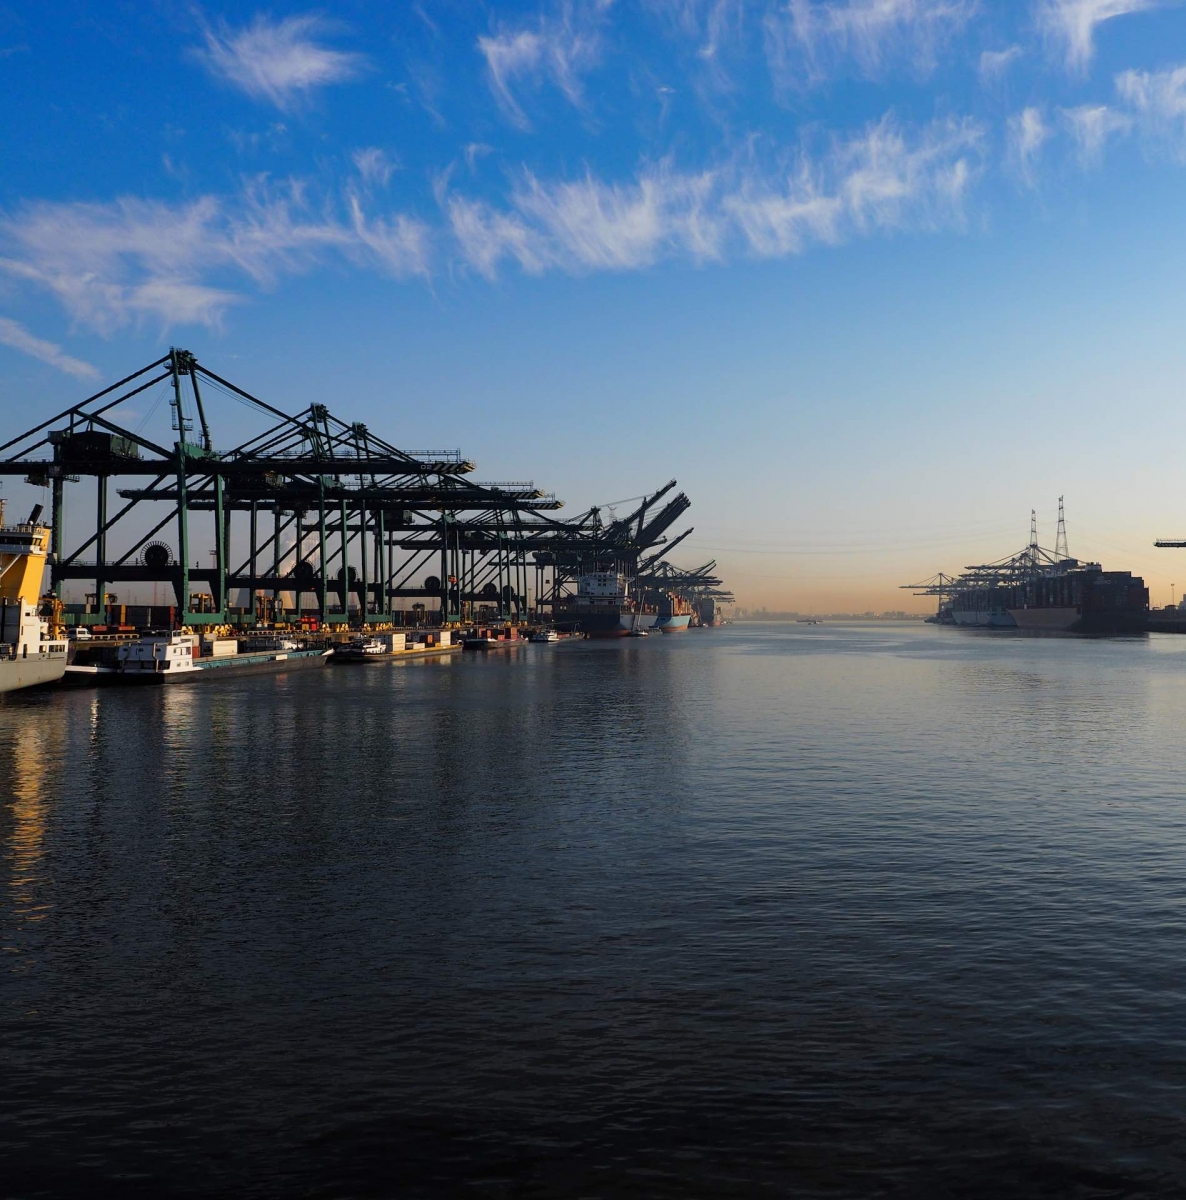 Grúas portuarias descargando contenedores de barcos en una mañana soleada en el puerto de Amberes.